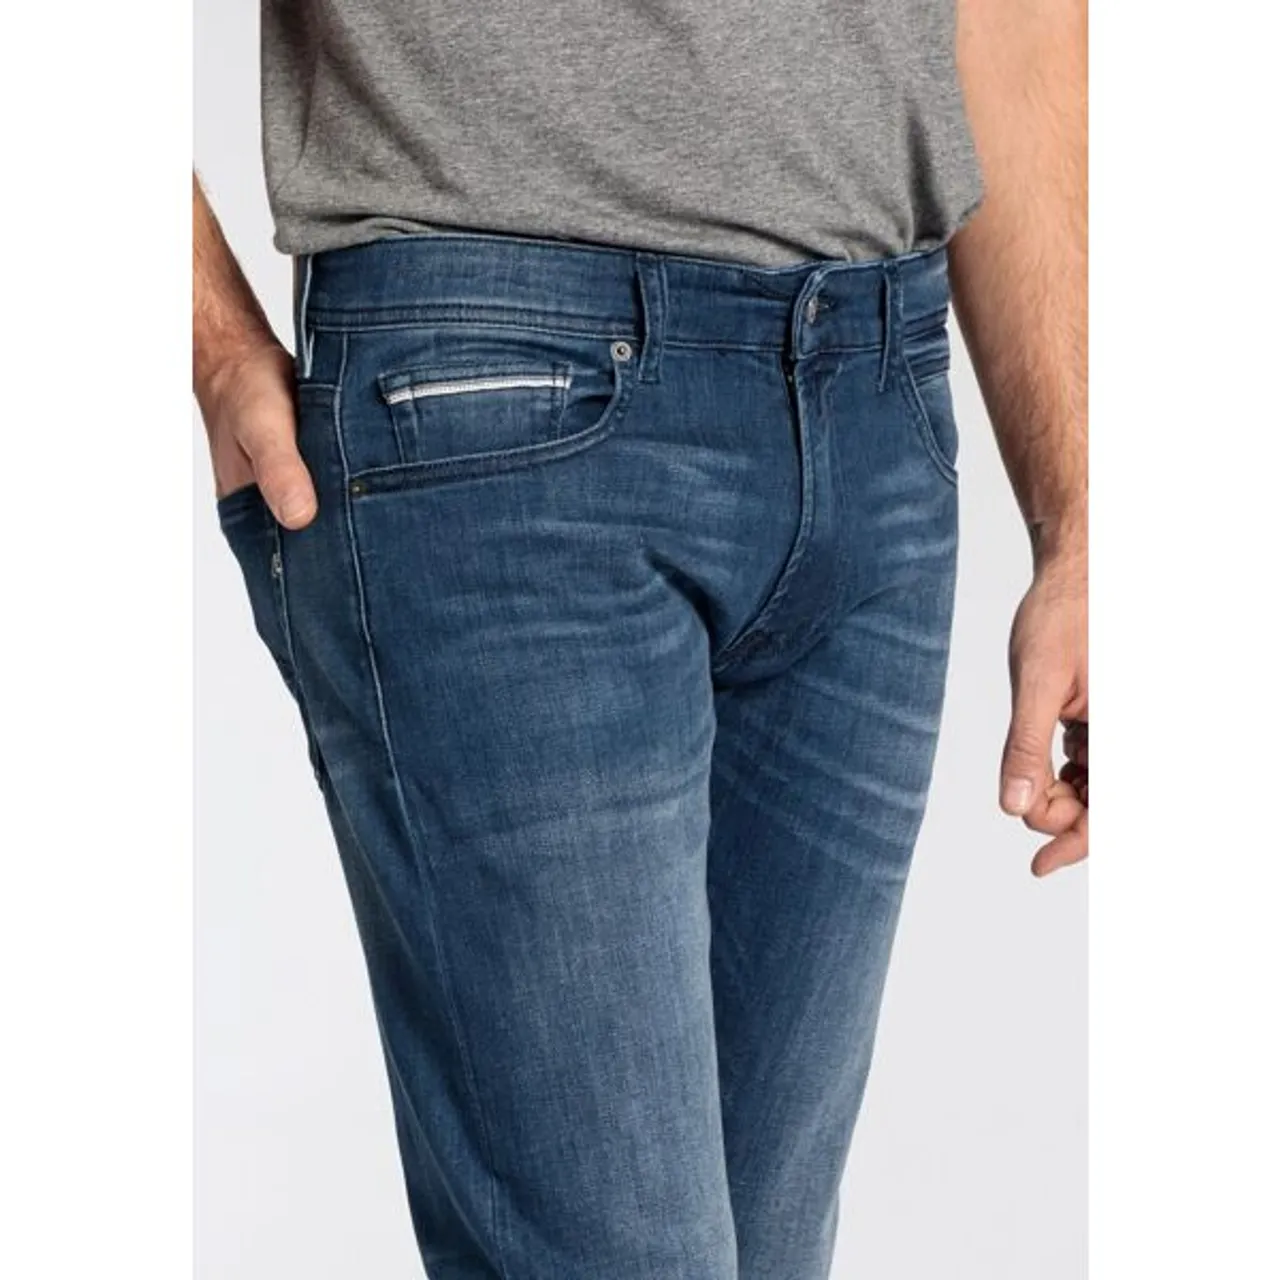 Straight-Jeans REPLAY "GROVER" Gr. 33, Länge 30, blau (blue medium a783) Herren Jeans Straight Fit in vielen verschiedenen Waschungen, mit Stretch